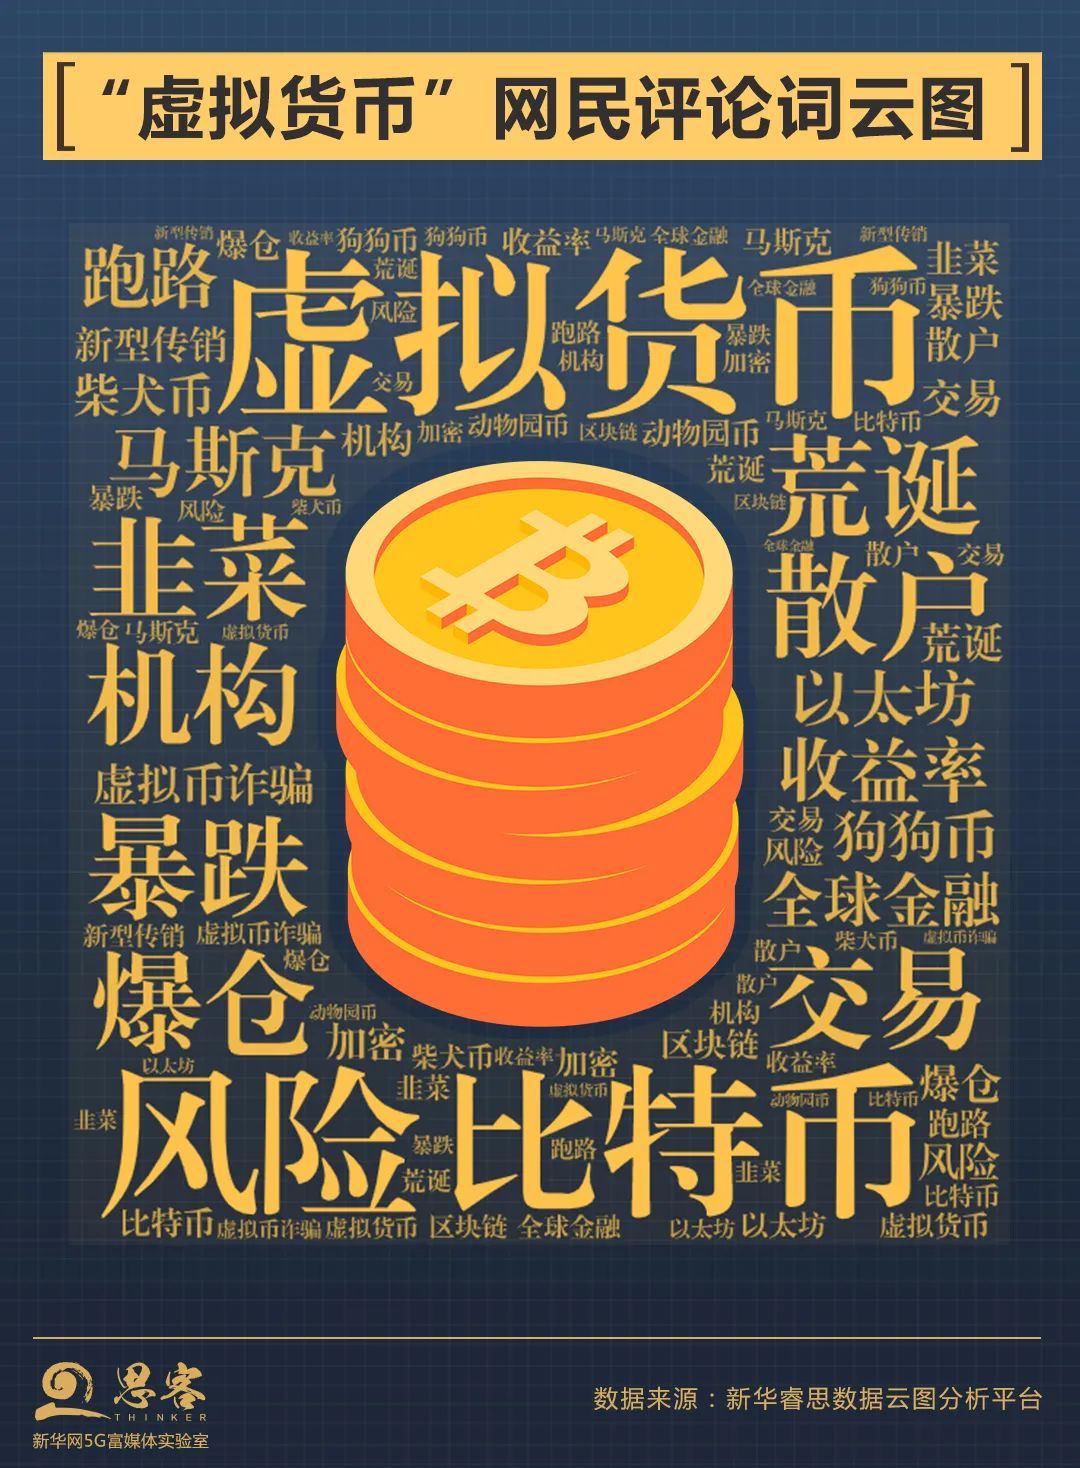 新华网：“币圈神话”？清醒一点！